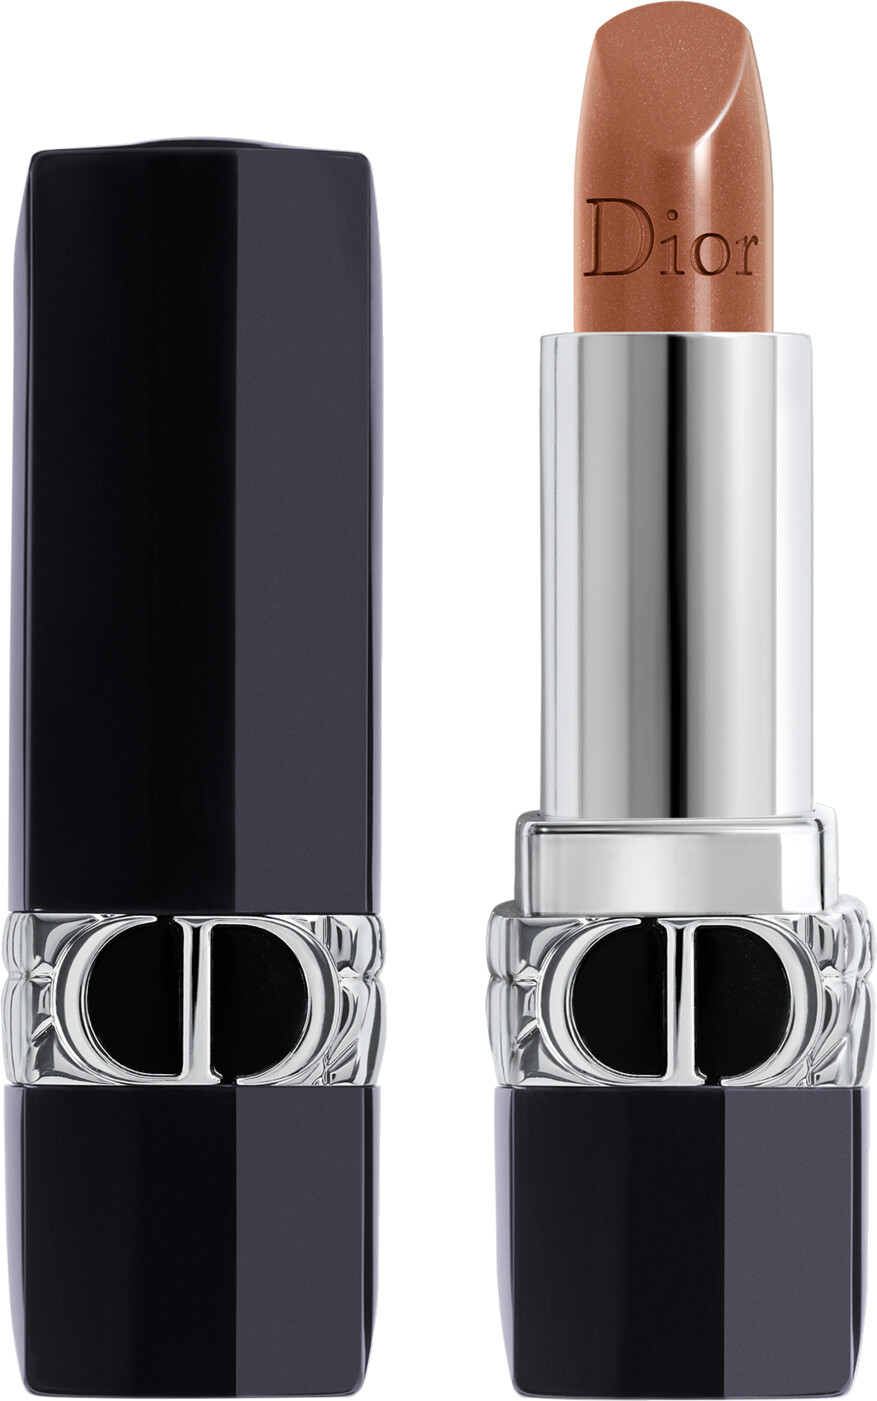 DIOR Rouge Dior Coloured Lip Balm - Diorivera Limited Edition 3.5g 726 - Bronze - Satin